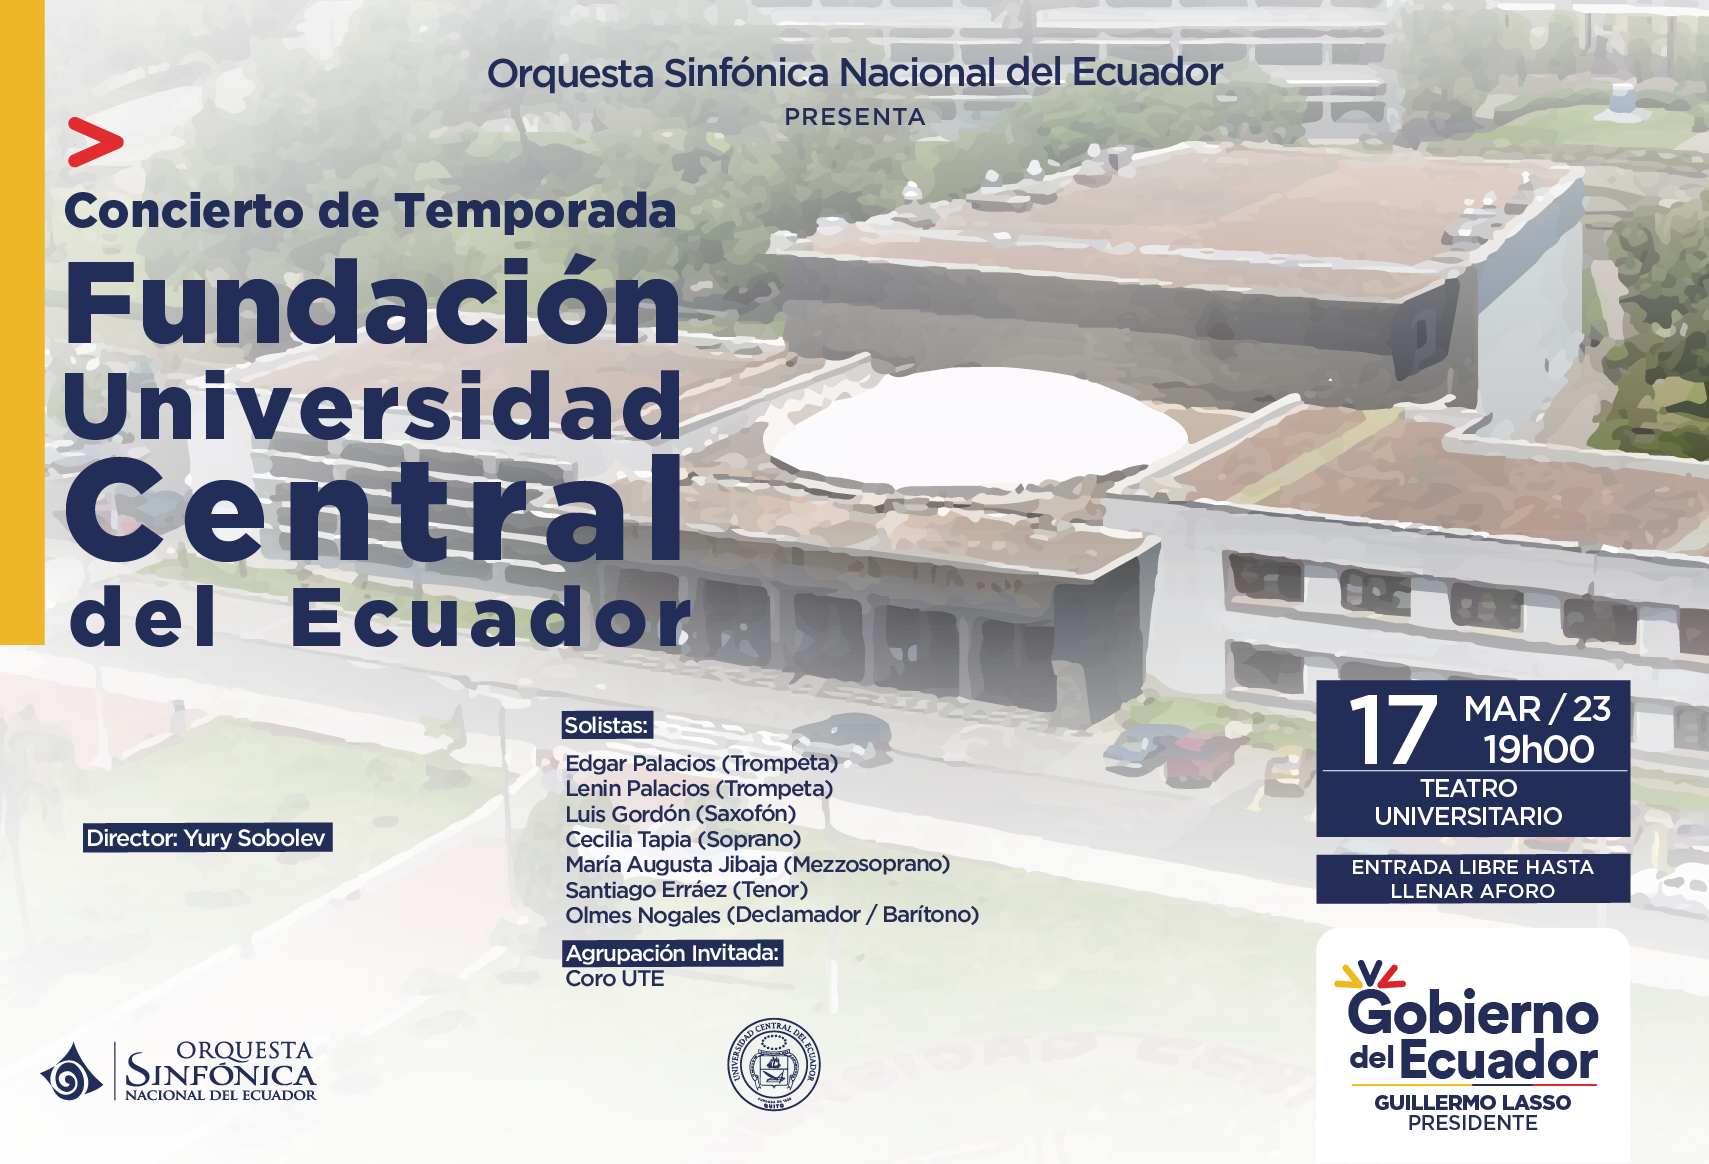 CONCIERTO DE TEMPORADA, FUNDACIÓN UNIVERSIDAD CENTRAL DEL ECUADOR